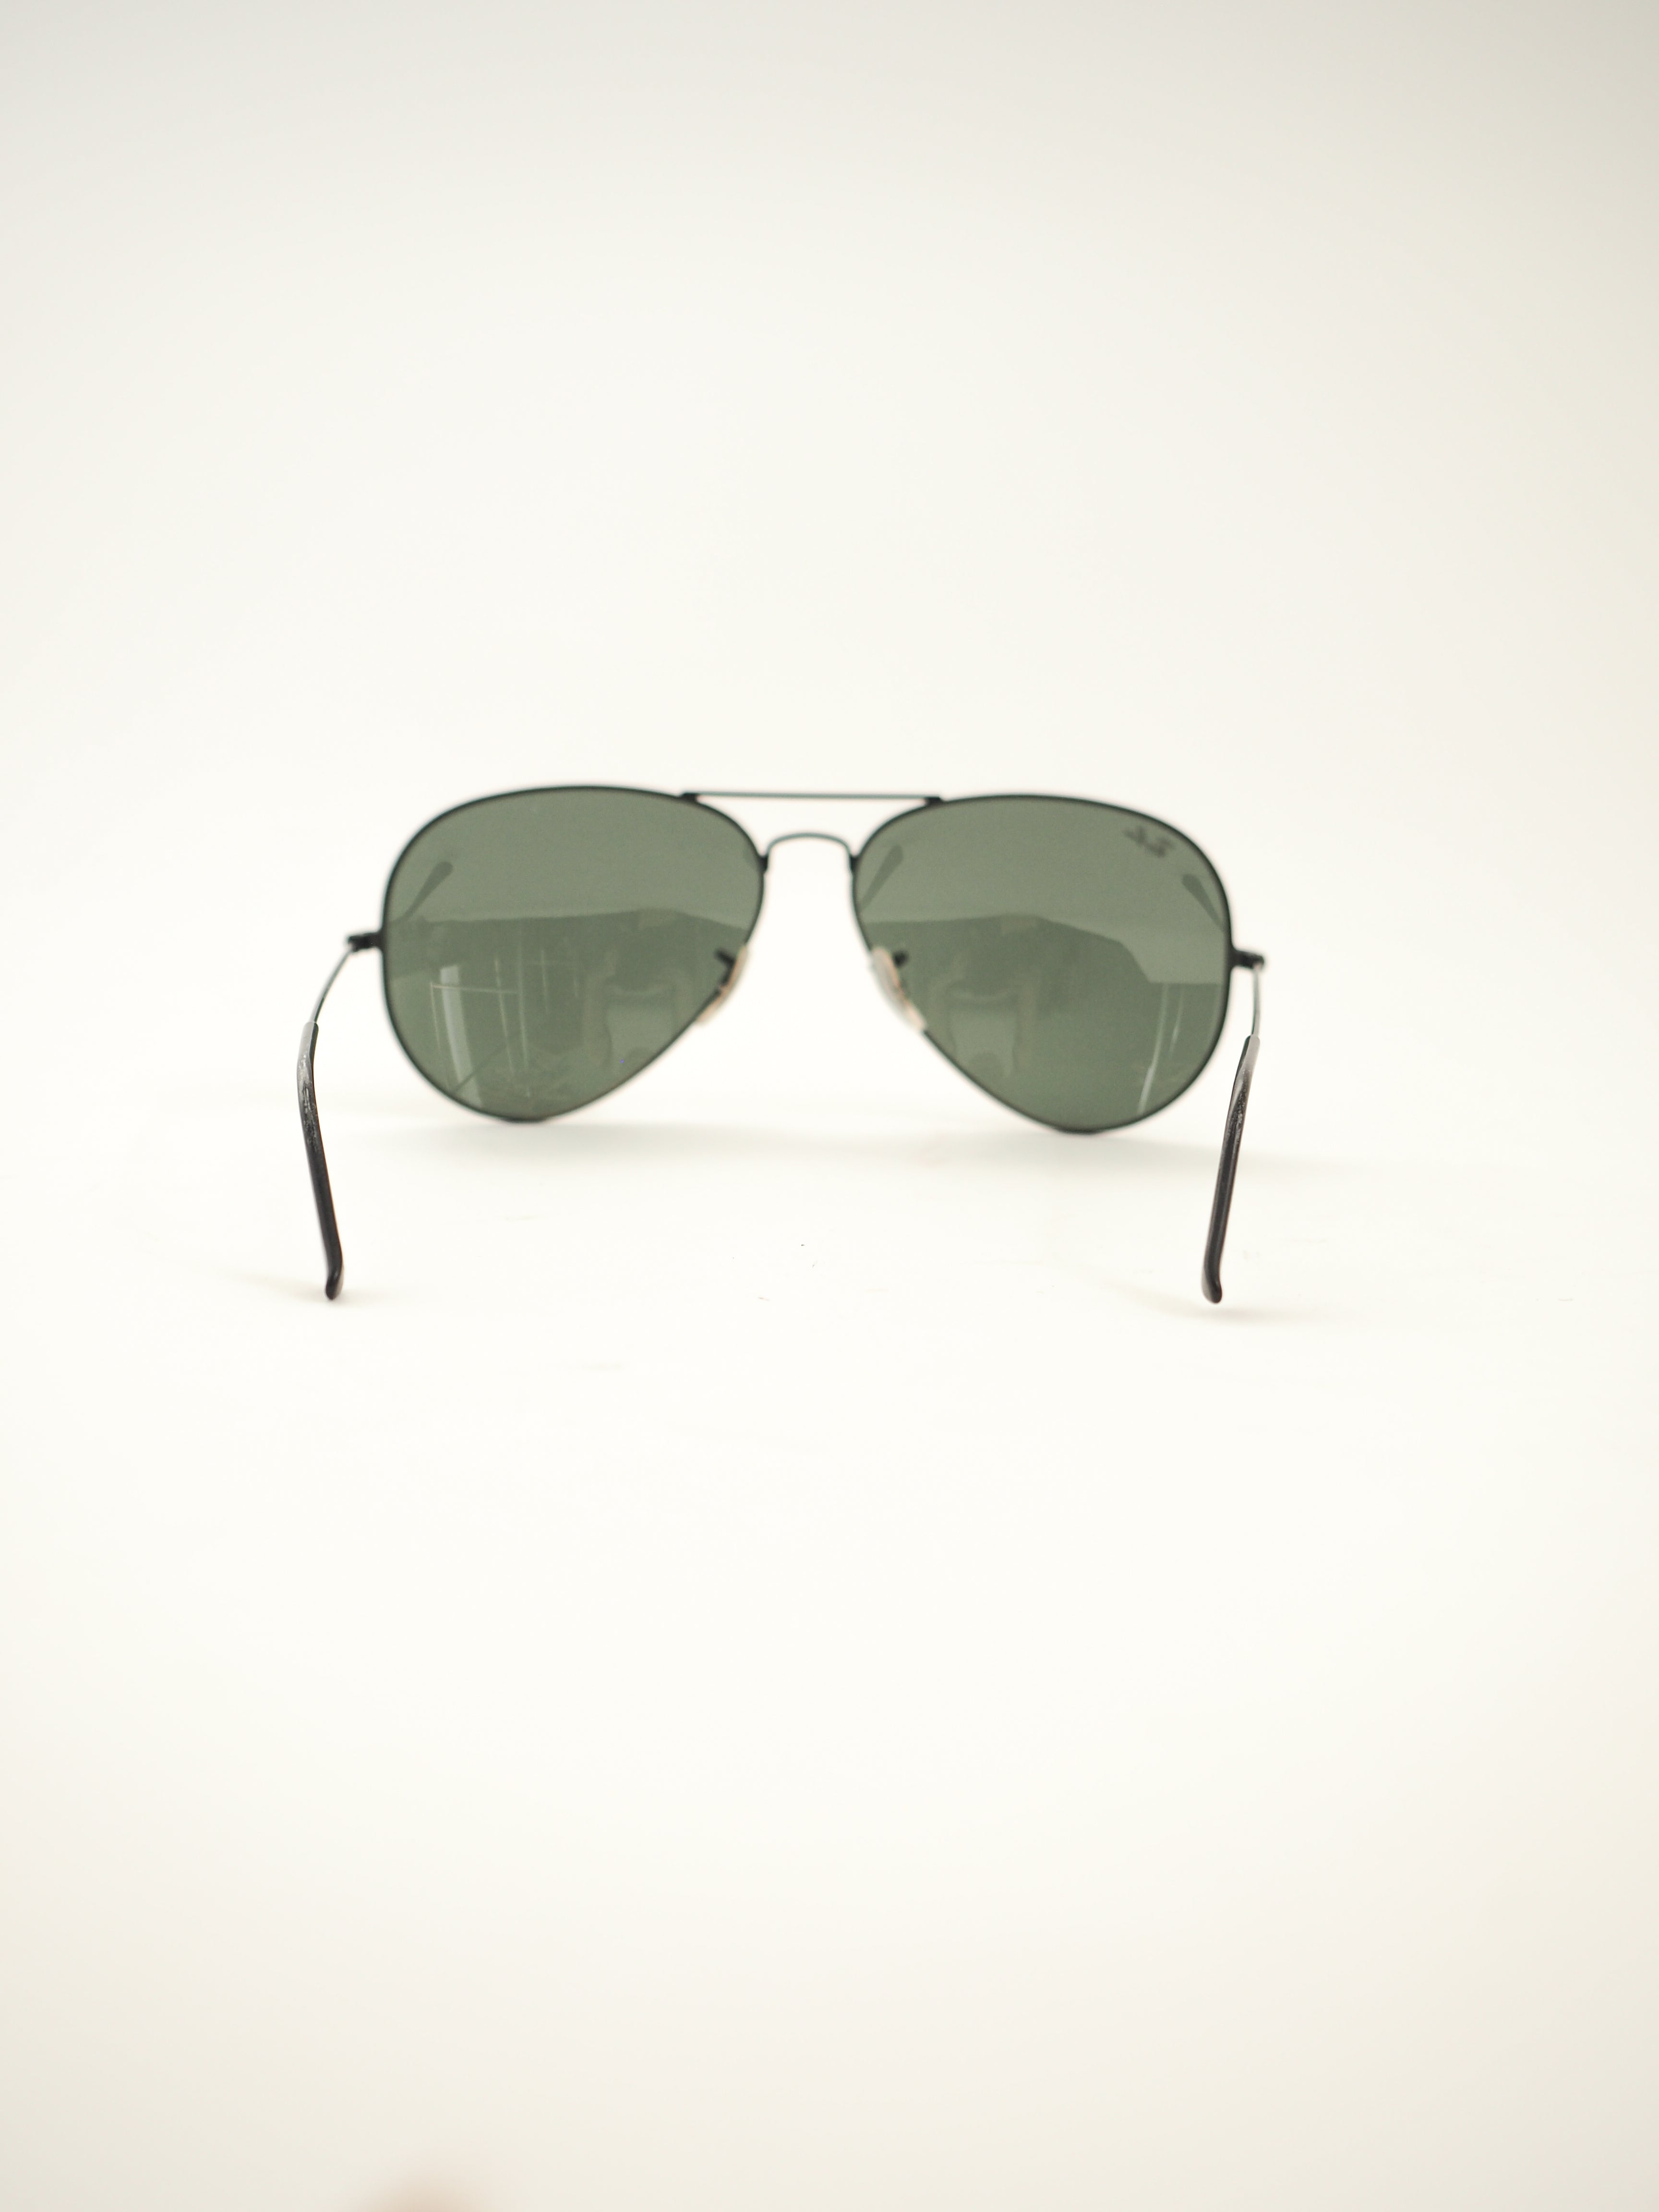 RayBan Aviator Classic Sunglasses